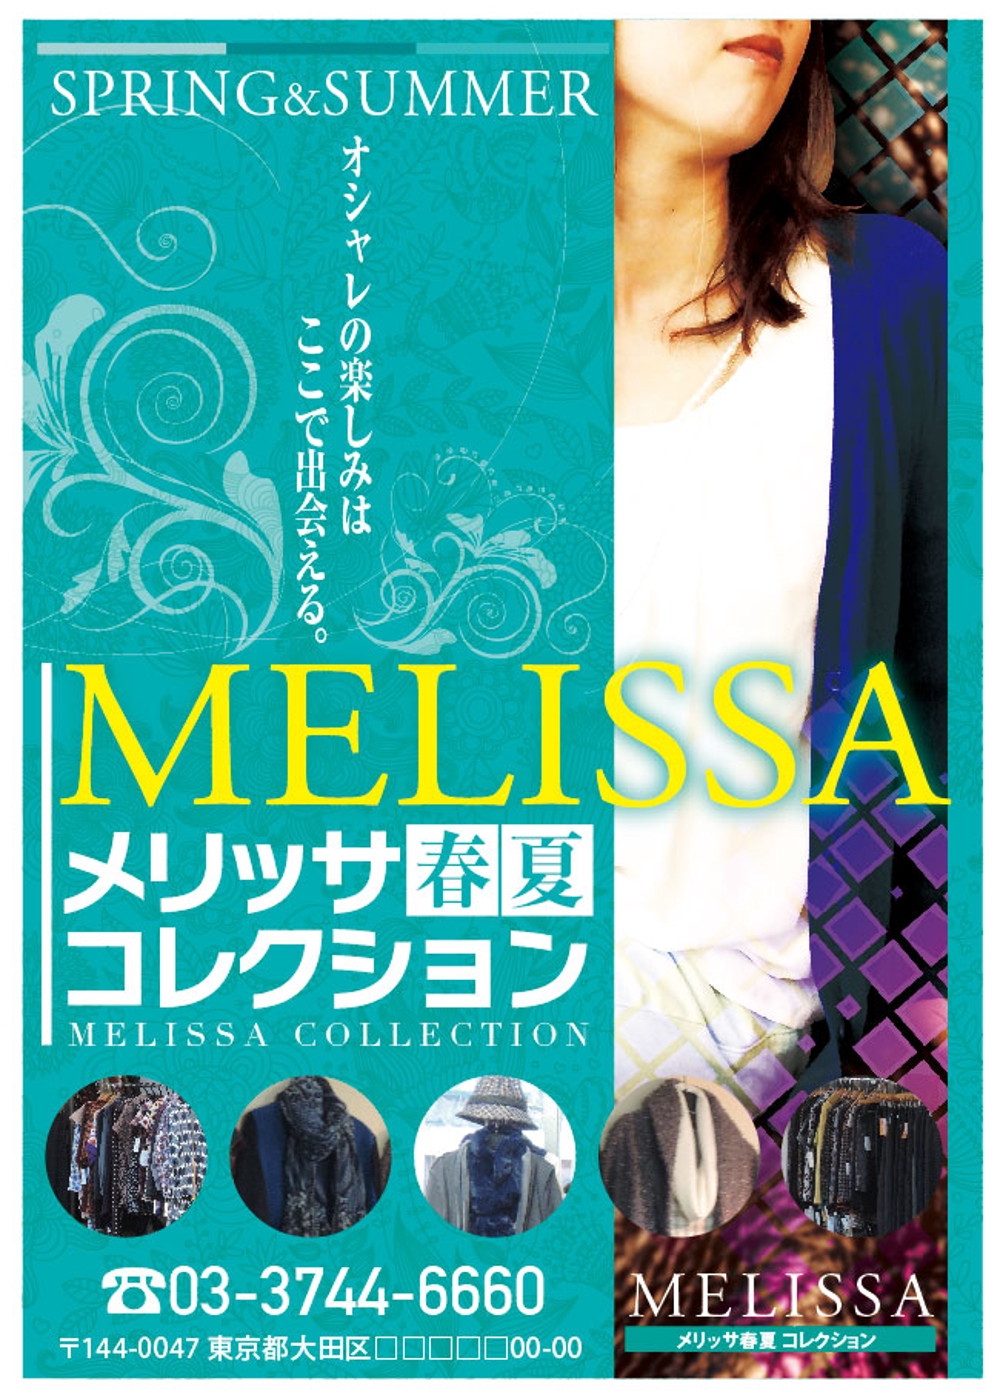 レディスのアパレルブティック「MELISSA」のポスターデザインの制作